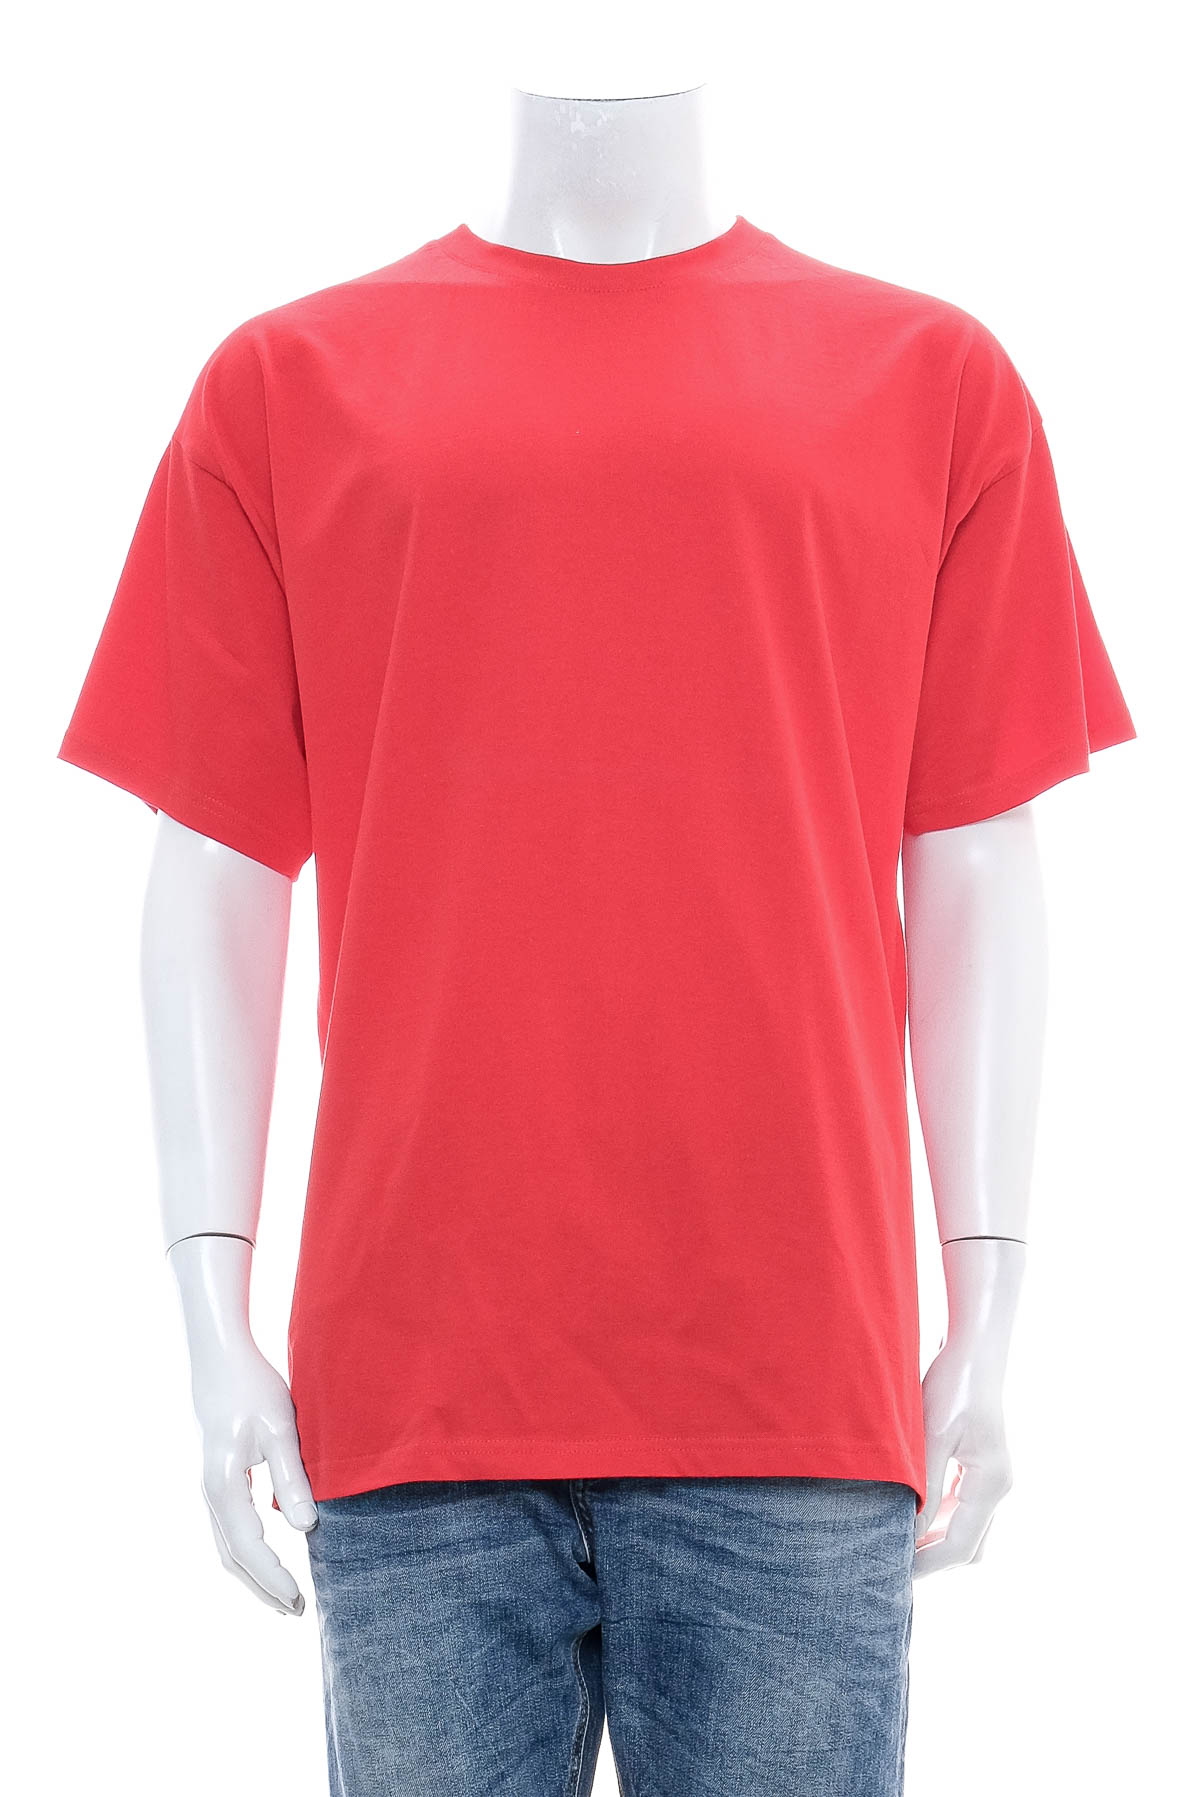 Men's T-shirt - B&C Collection - 0